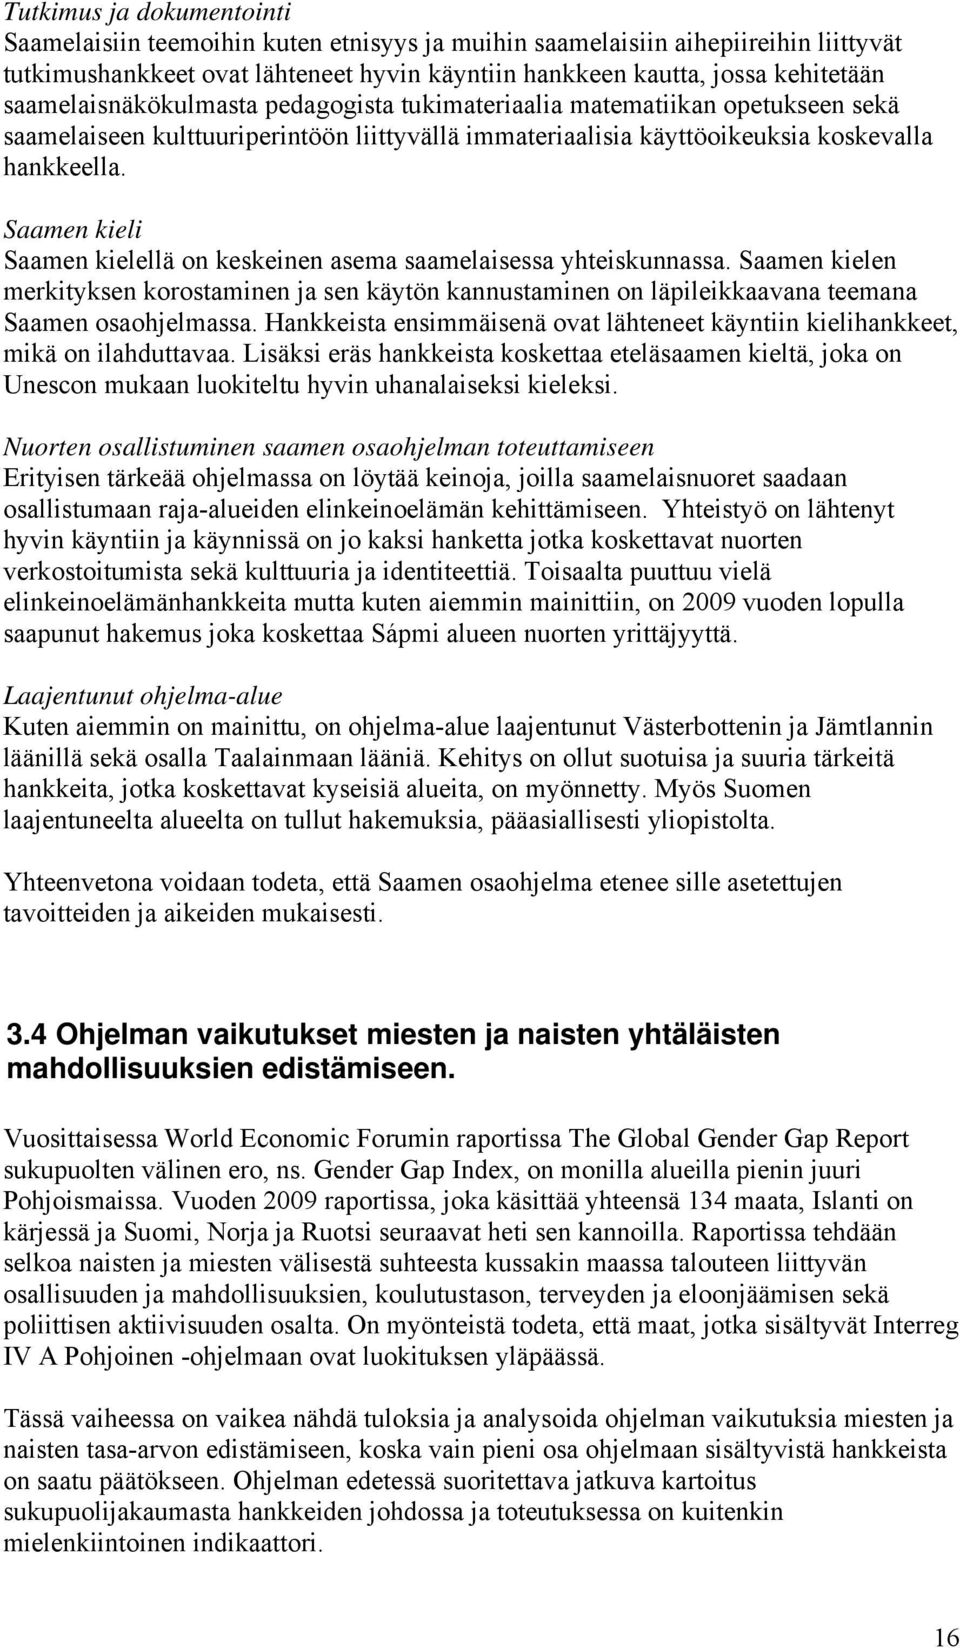 Saamen kieli Saamen kielellä on keskeinen asema saamelaisessa yhteiskunnassa. Saamen kielen merkityksen korostaminen ja sen käytön kannustaminen on läpileikkaavana teemana Saamen osaohjelmassa.